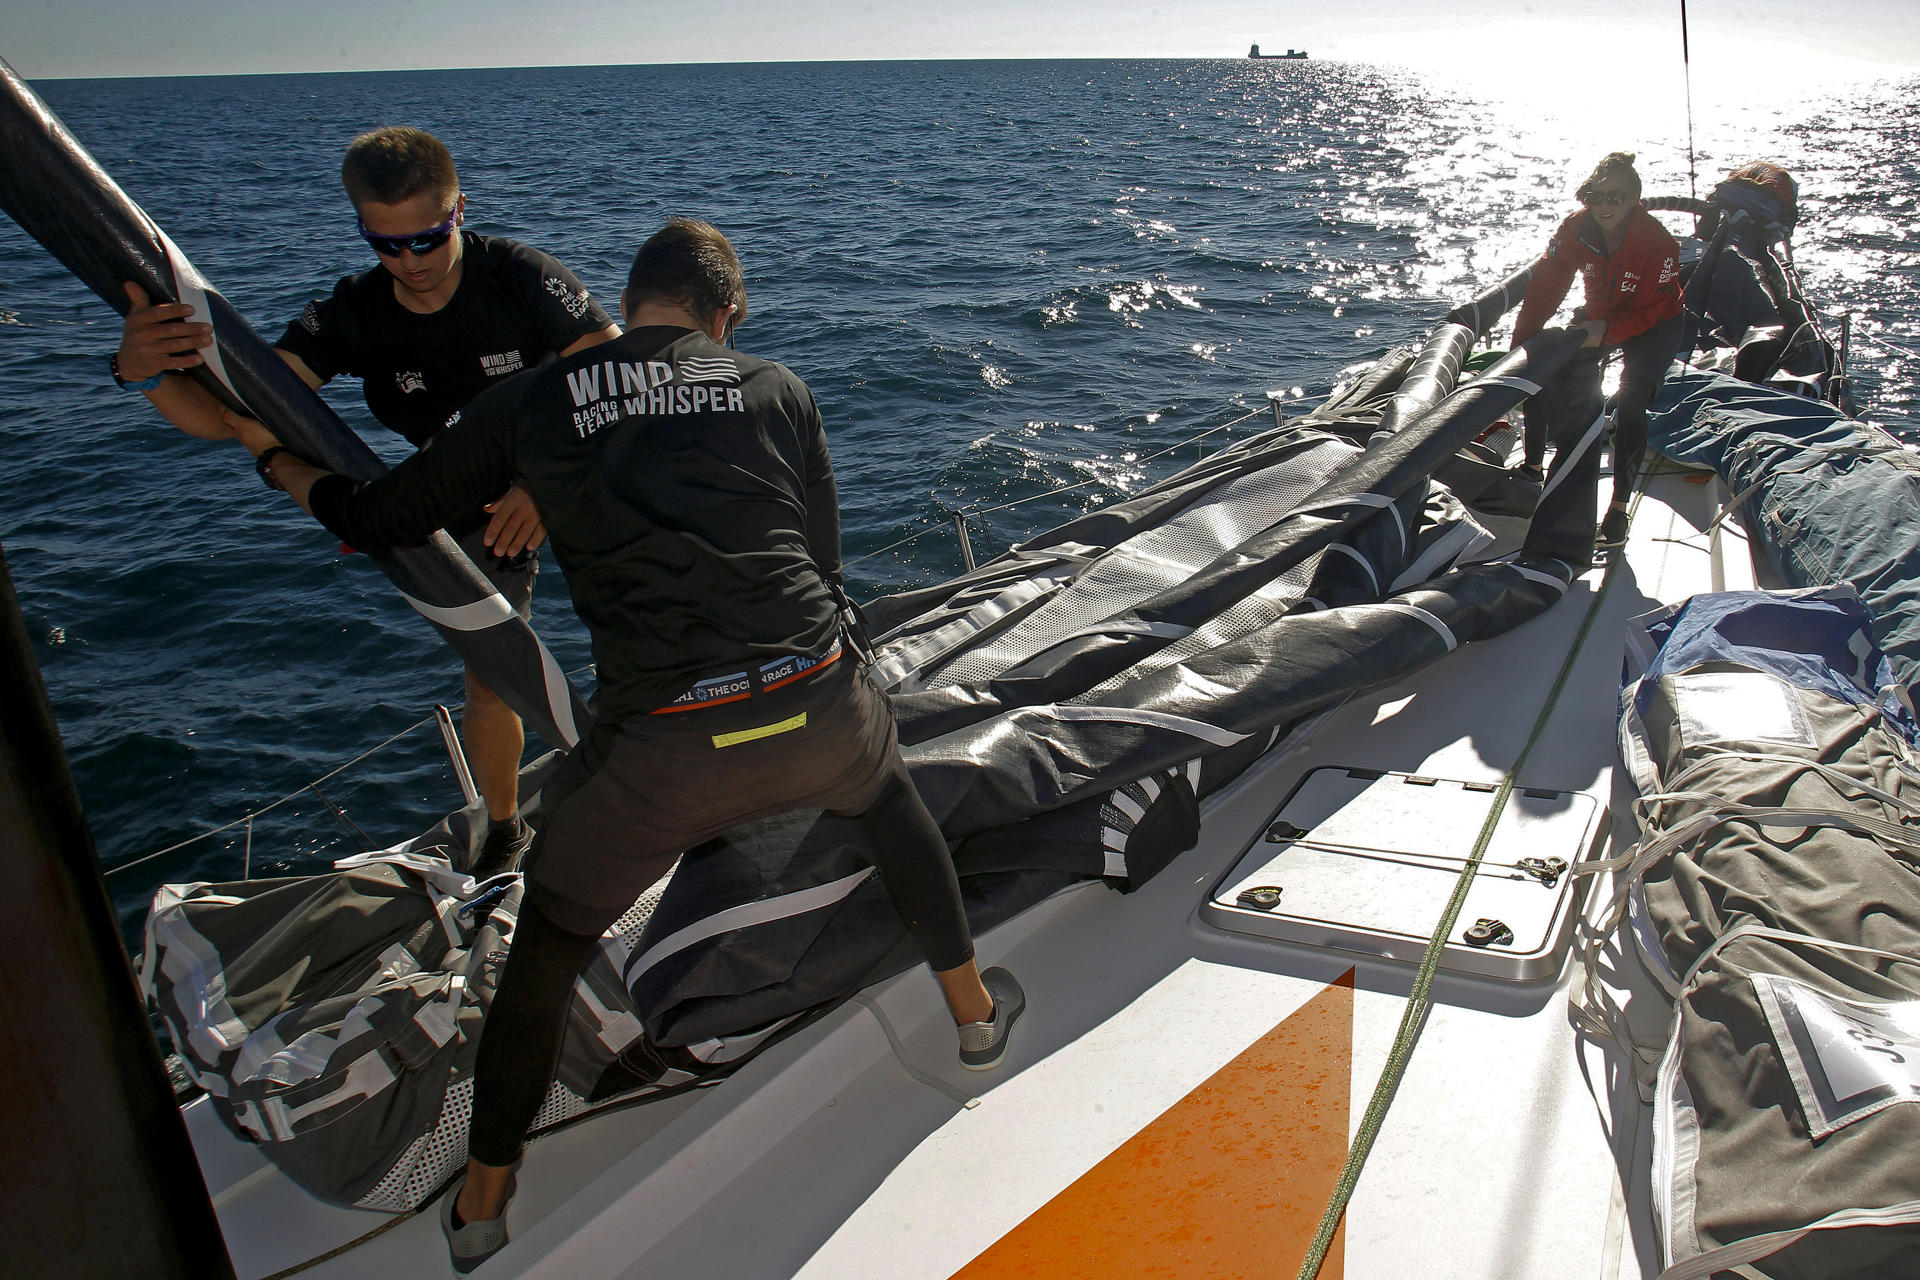 En la imagen, un entrenamiento del equipo Wind Whisper Racing Team en la bahía de Alicante.EFE/Morell